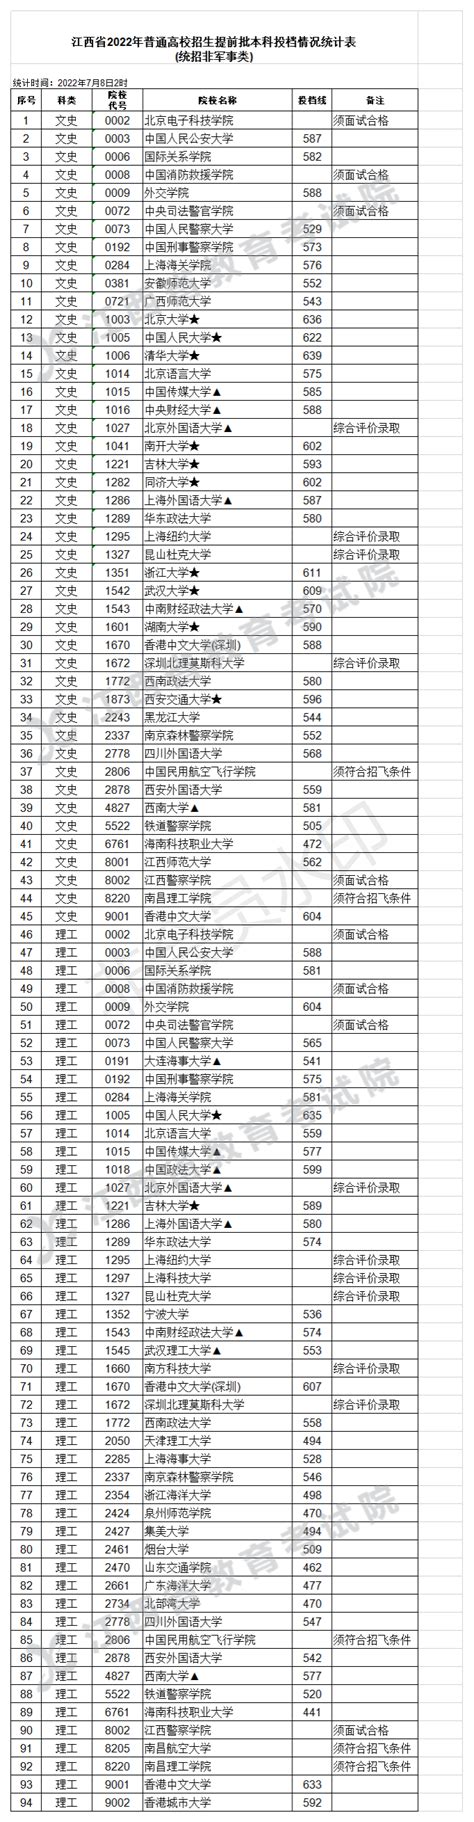 江西省2018年高考提前批本科录取分数线公布_江西高考_一品高考网